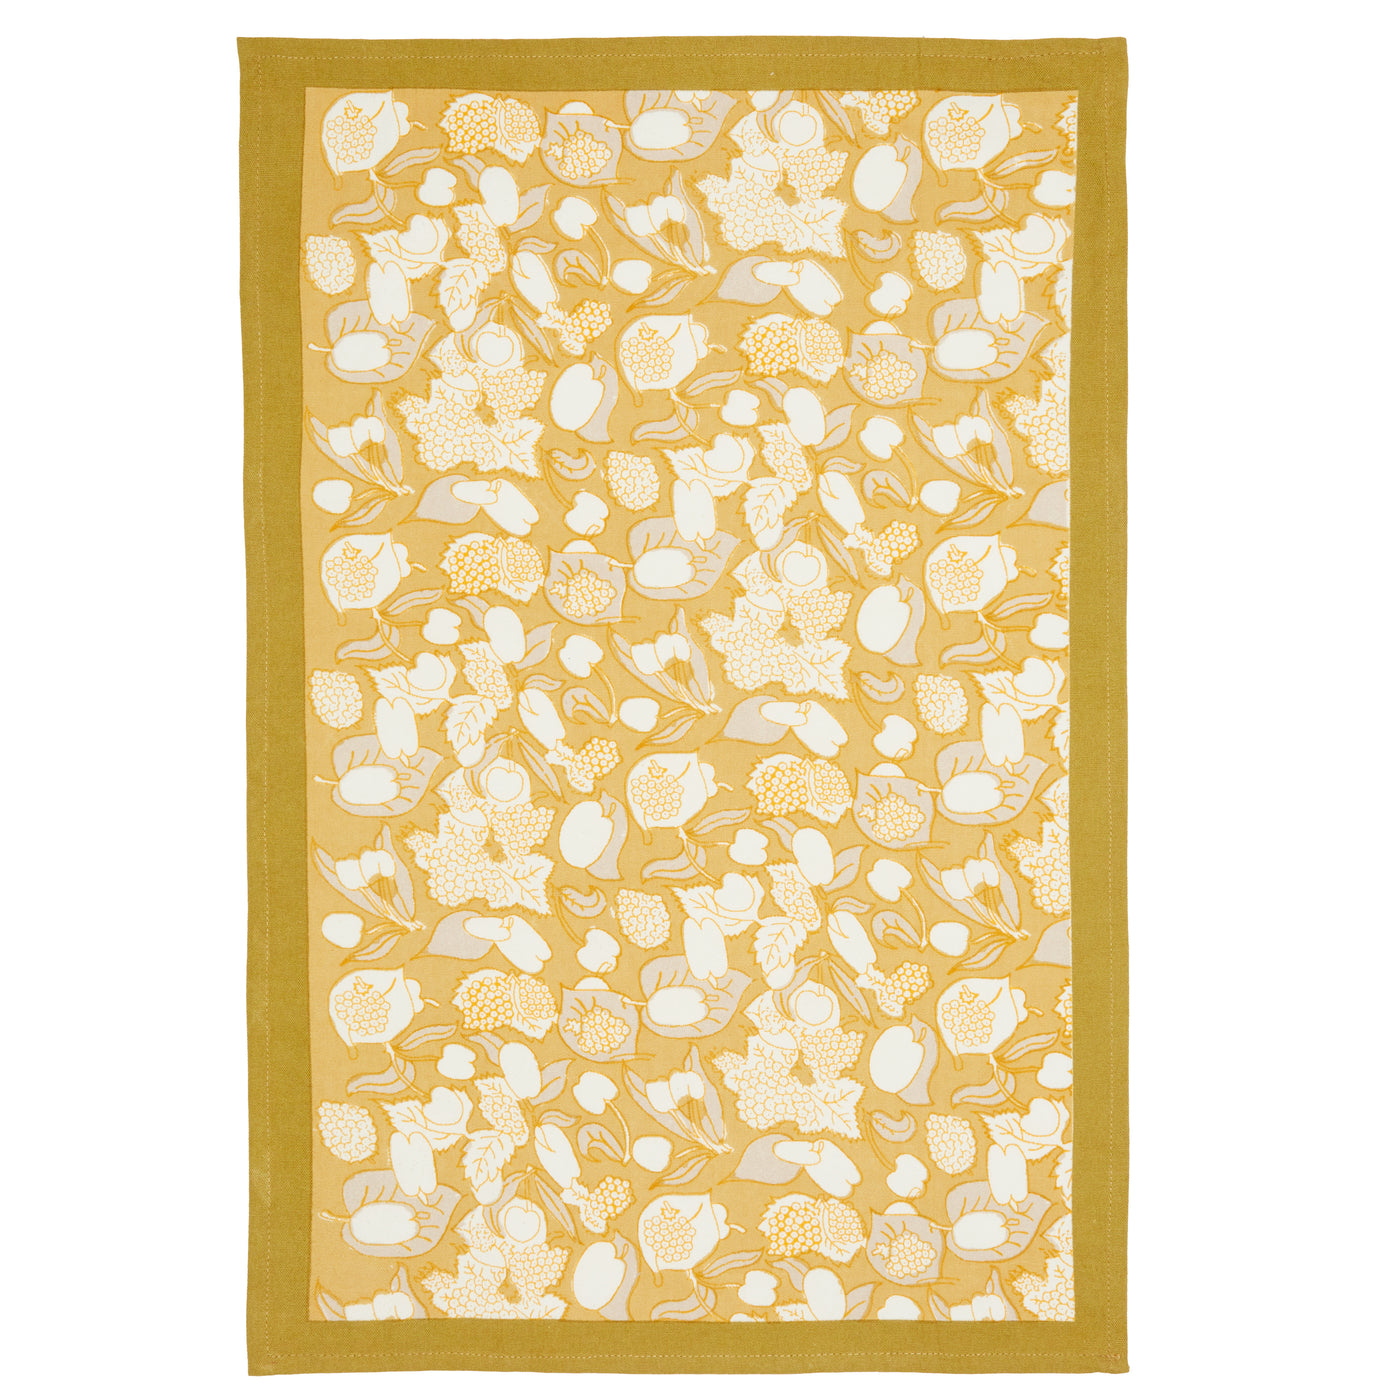 Forest Harvest Tea Towels Grey & Mustard, Set of 3